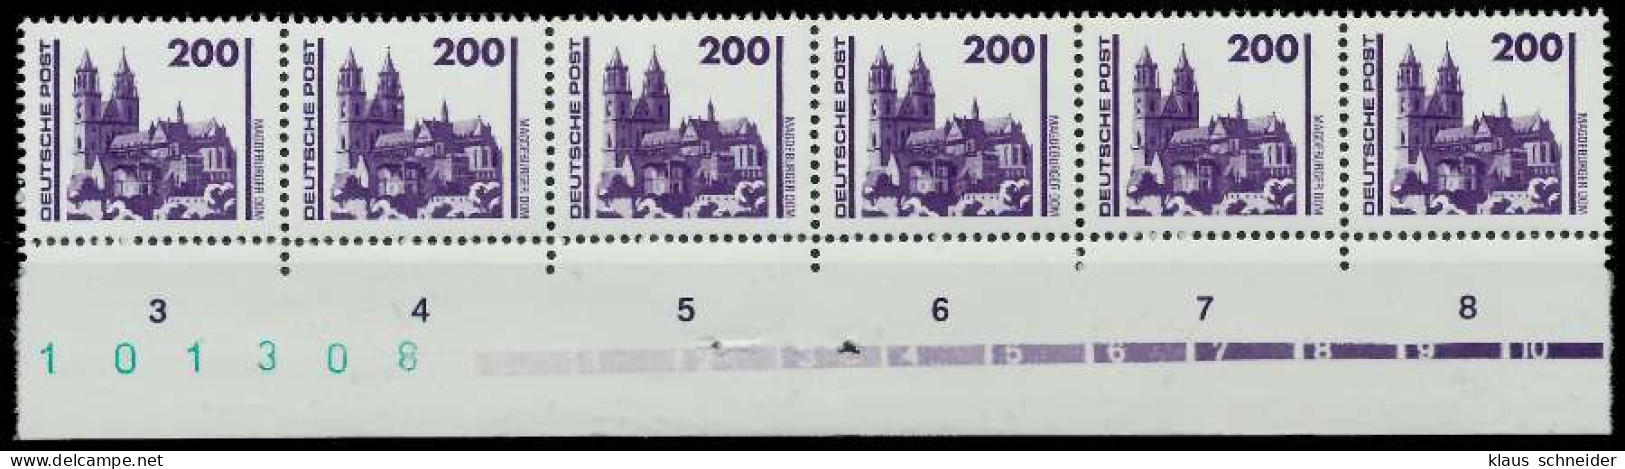 DDR DS BAUWERKE DENKMÄLER Nr 3351 Postfrisch SO URA X02611E - Unused Stamps